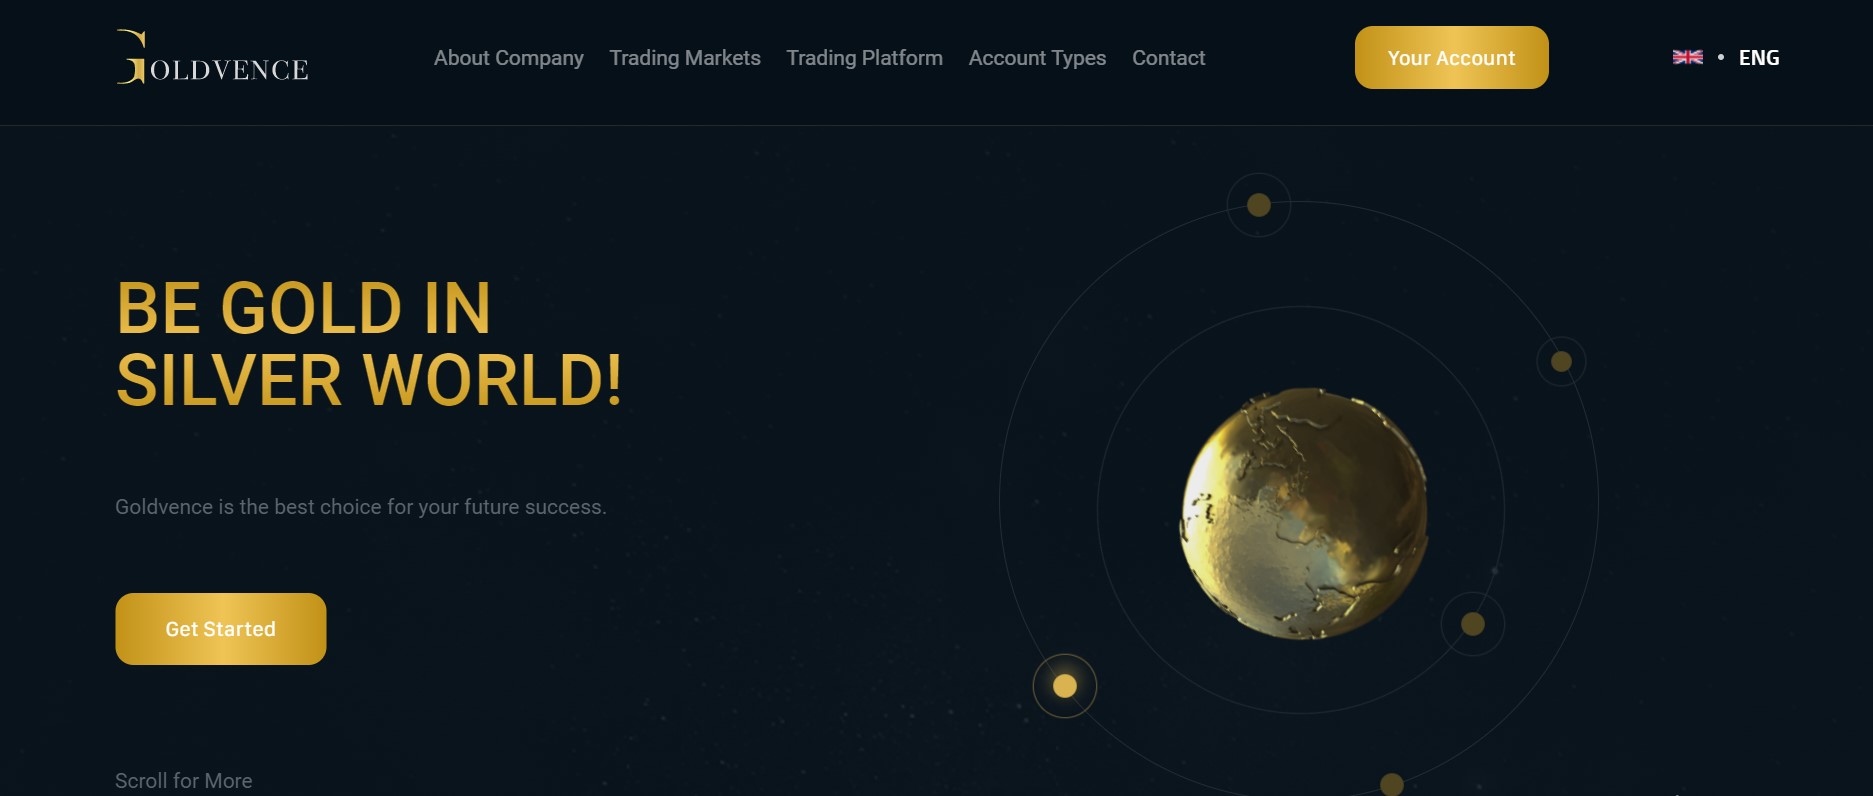 Goldvence website